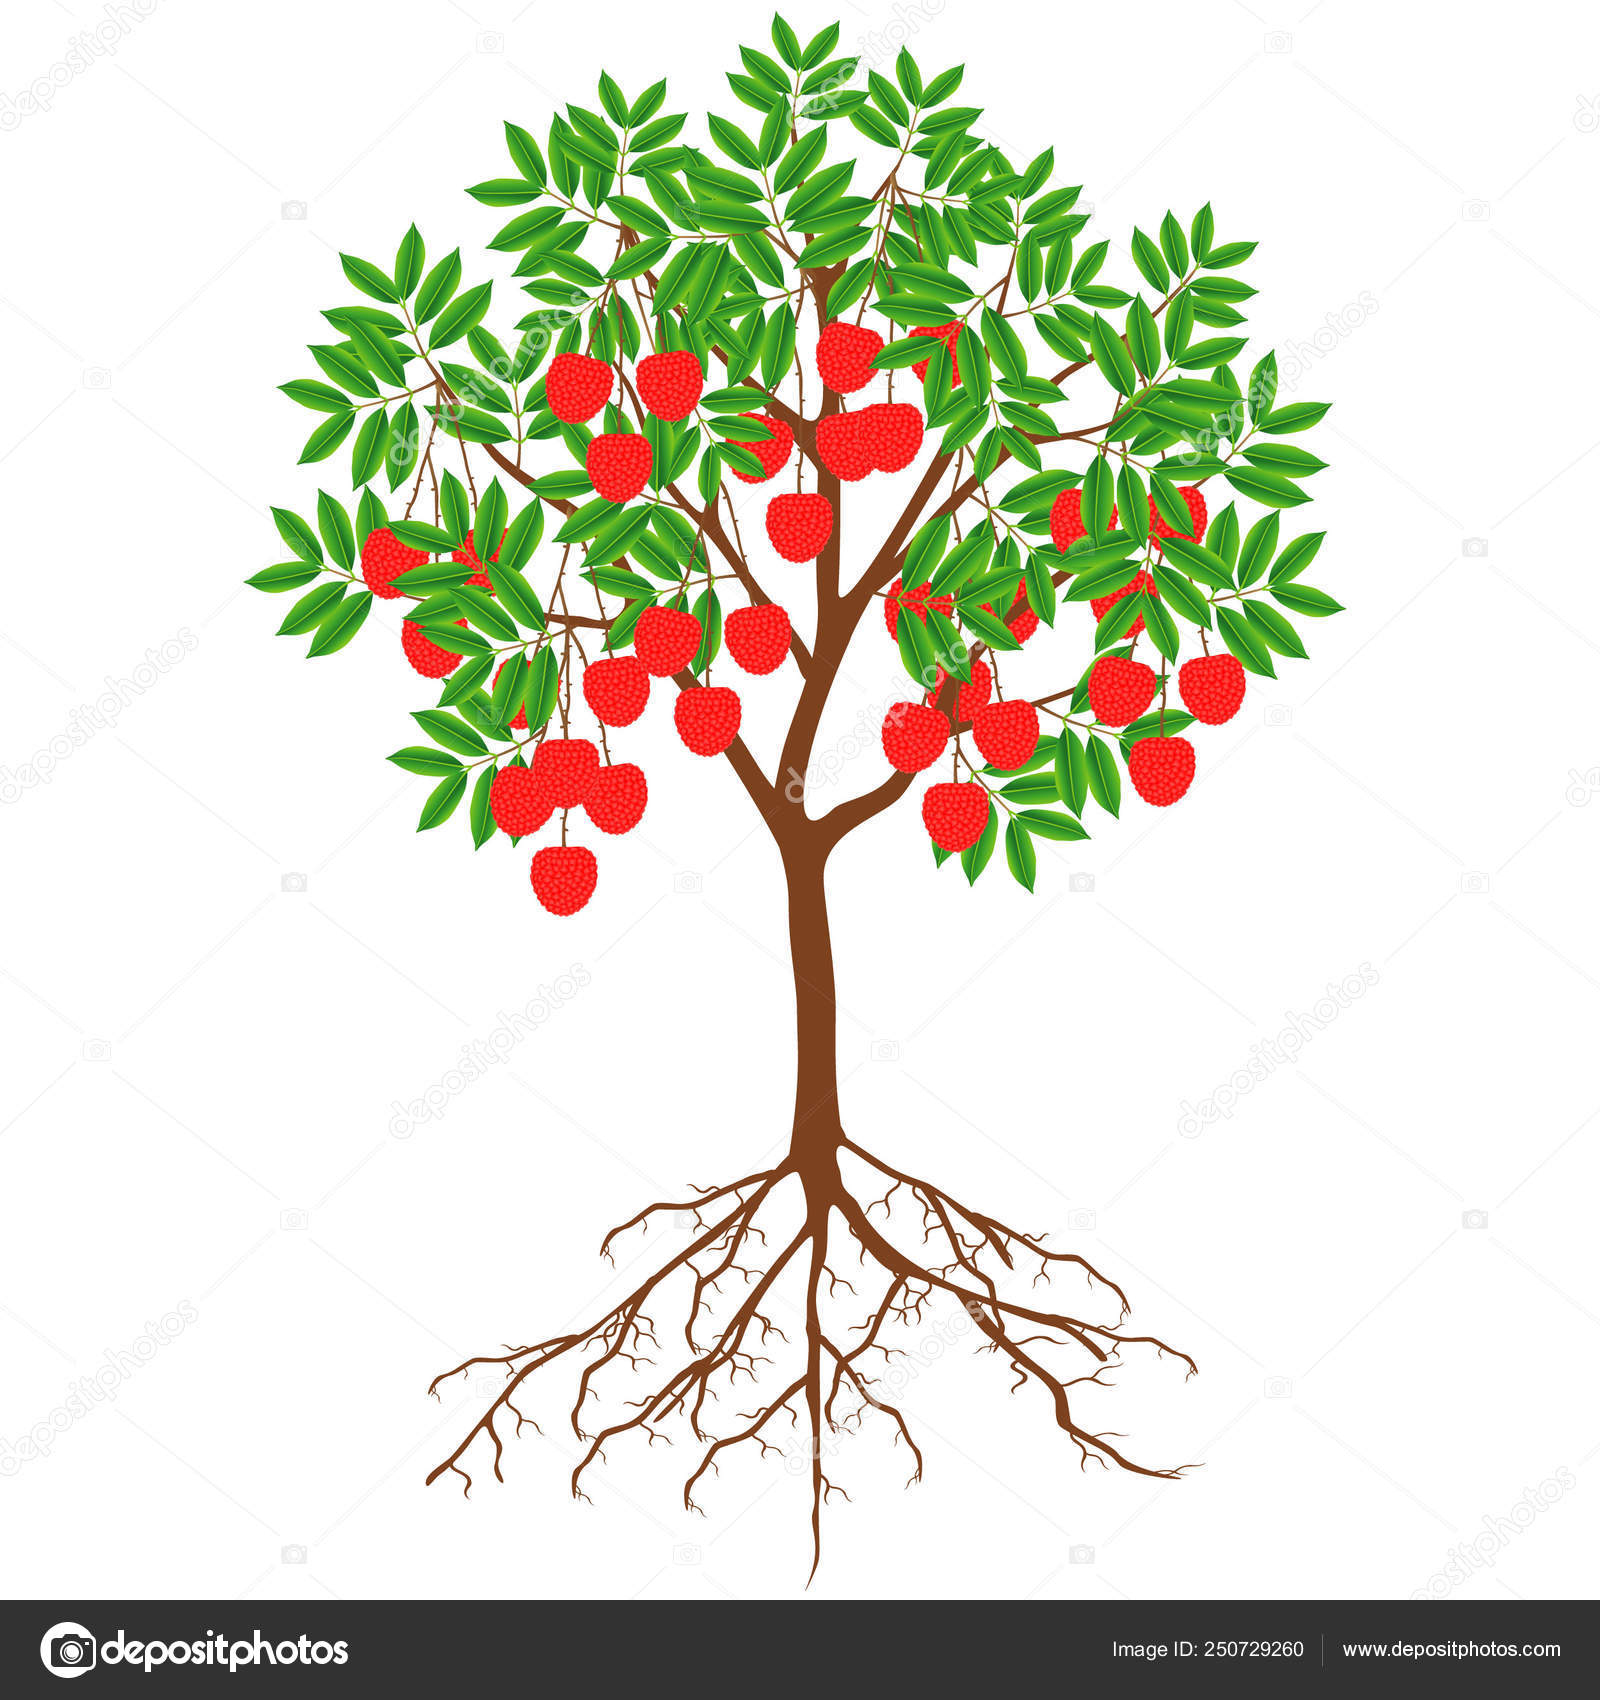 Цветущее фруктовое дерево с корнем